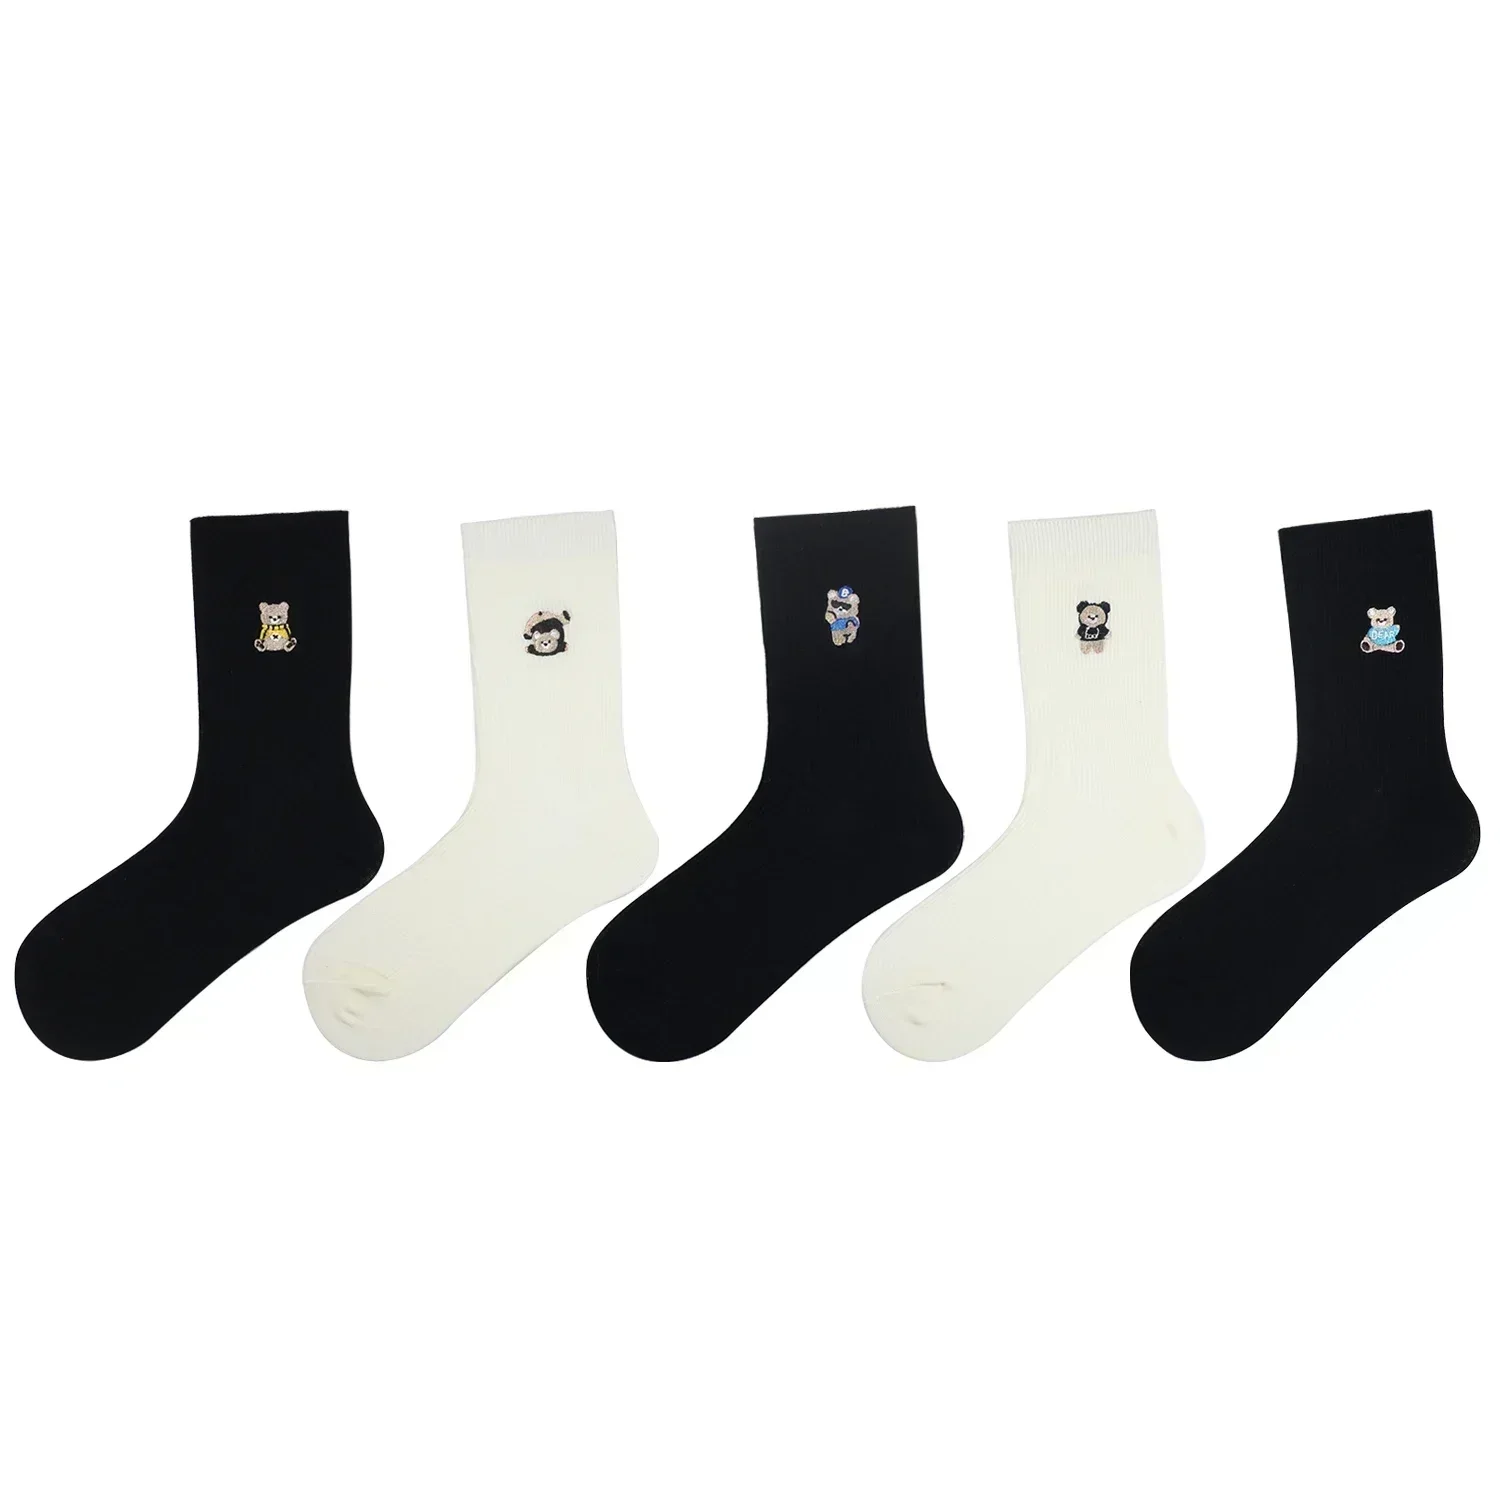 5 Пар / лот Хлопчатобумажные носки для женщин Зимние Ретро-носки с милым медведем, черно-белый комплект, теплые носки для женщин, Рождественский подарок для женщины